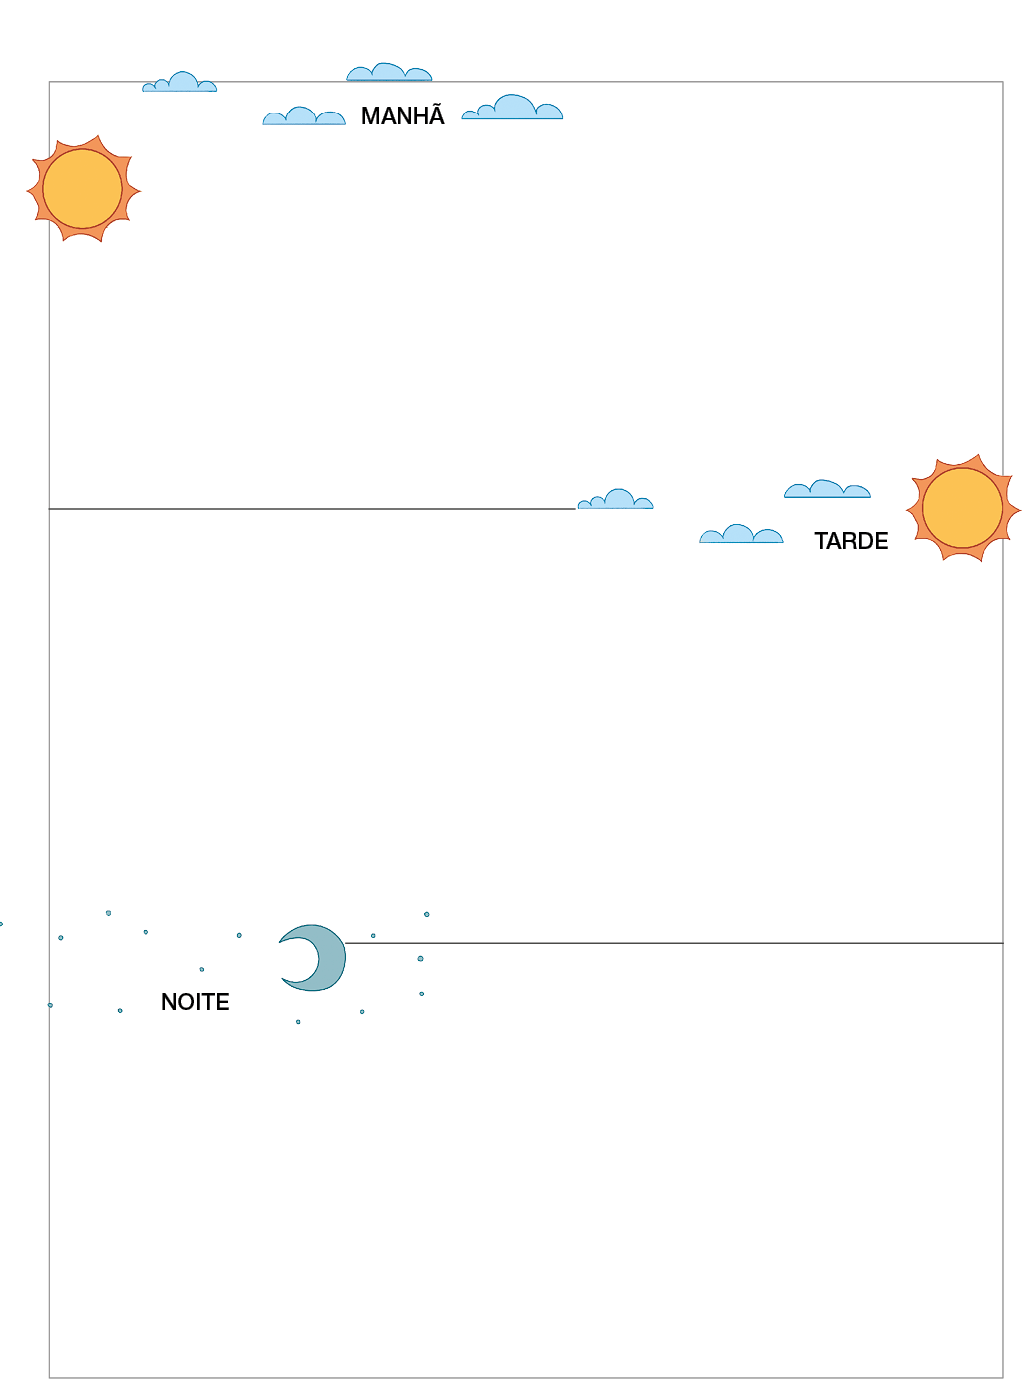 Imagem: Ilustração. Página em branco com ilustração de nuvens e sol voltado para esquerda - MANHÃ - seguido de ilustração de nuvens e sol voltado para direita - TARDE - e ilustração de uma lua com estrelas - NOITE. Fim da imagem.